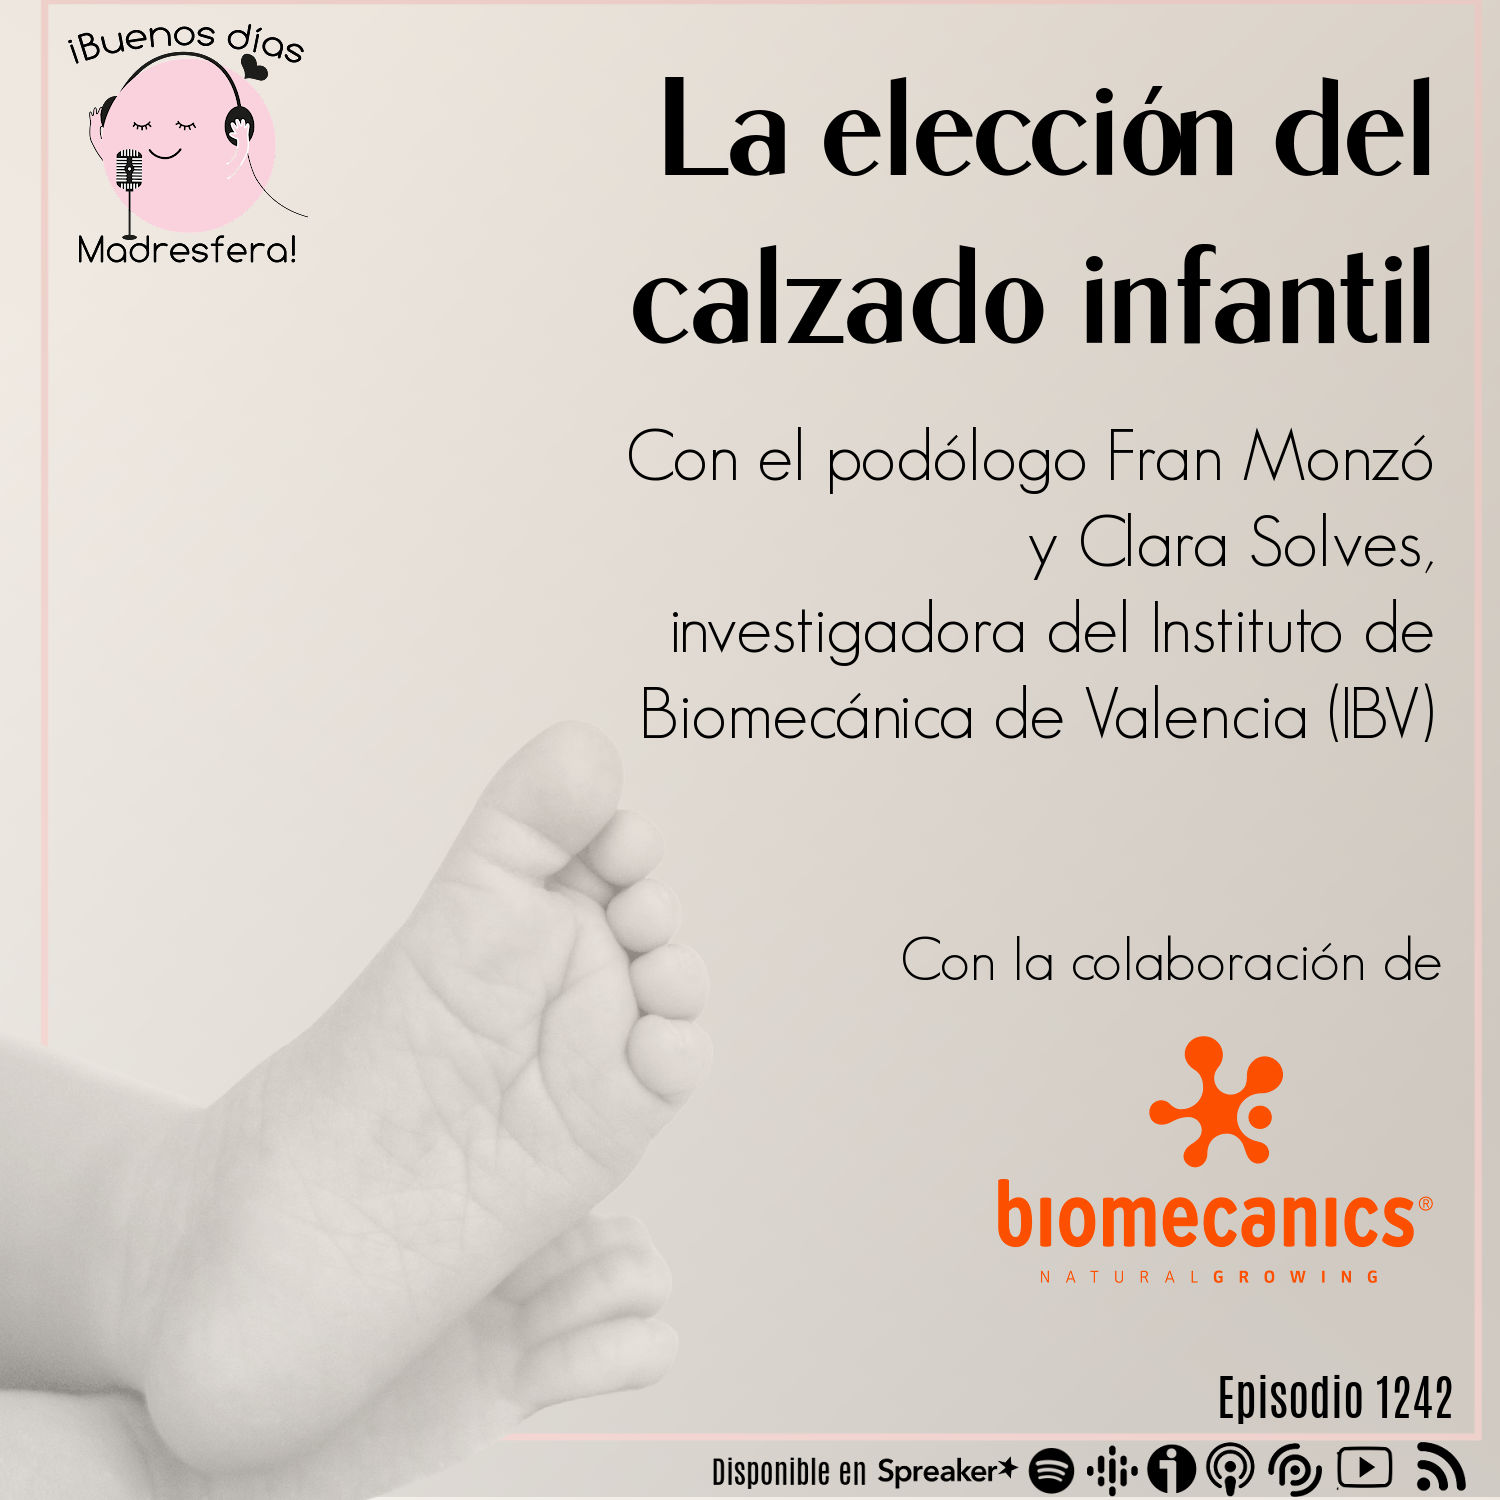 La elección del calzado infantil, con el podólogo Fran Monzó y la investigadora Clara Solves